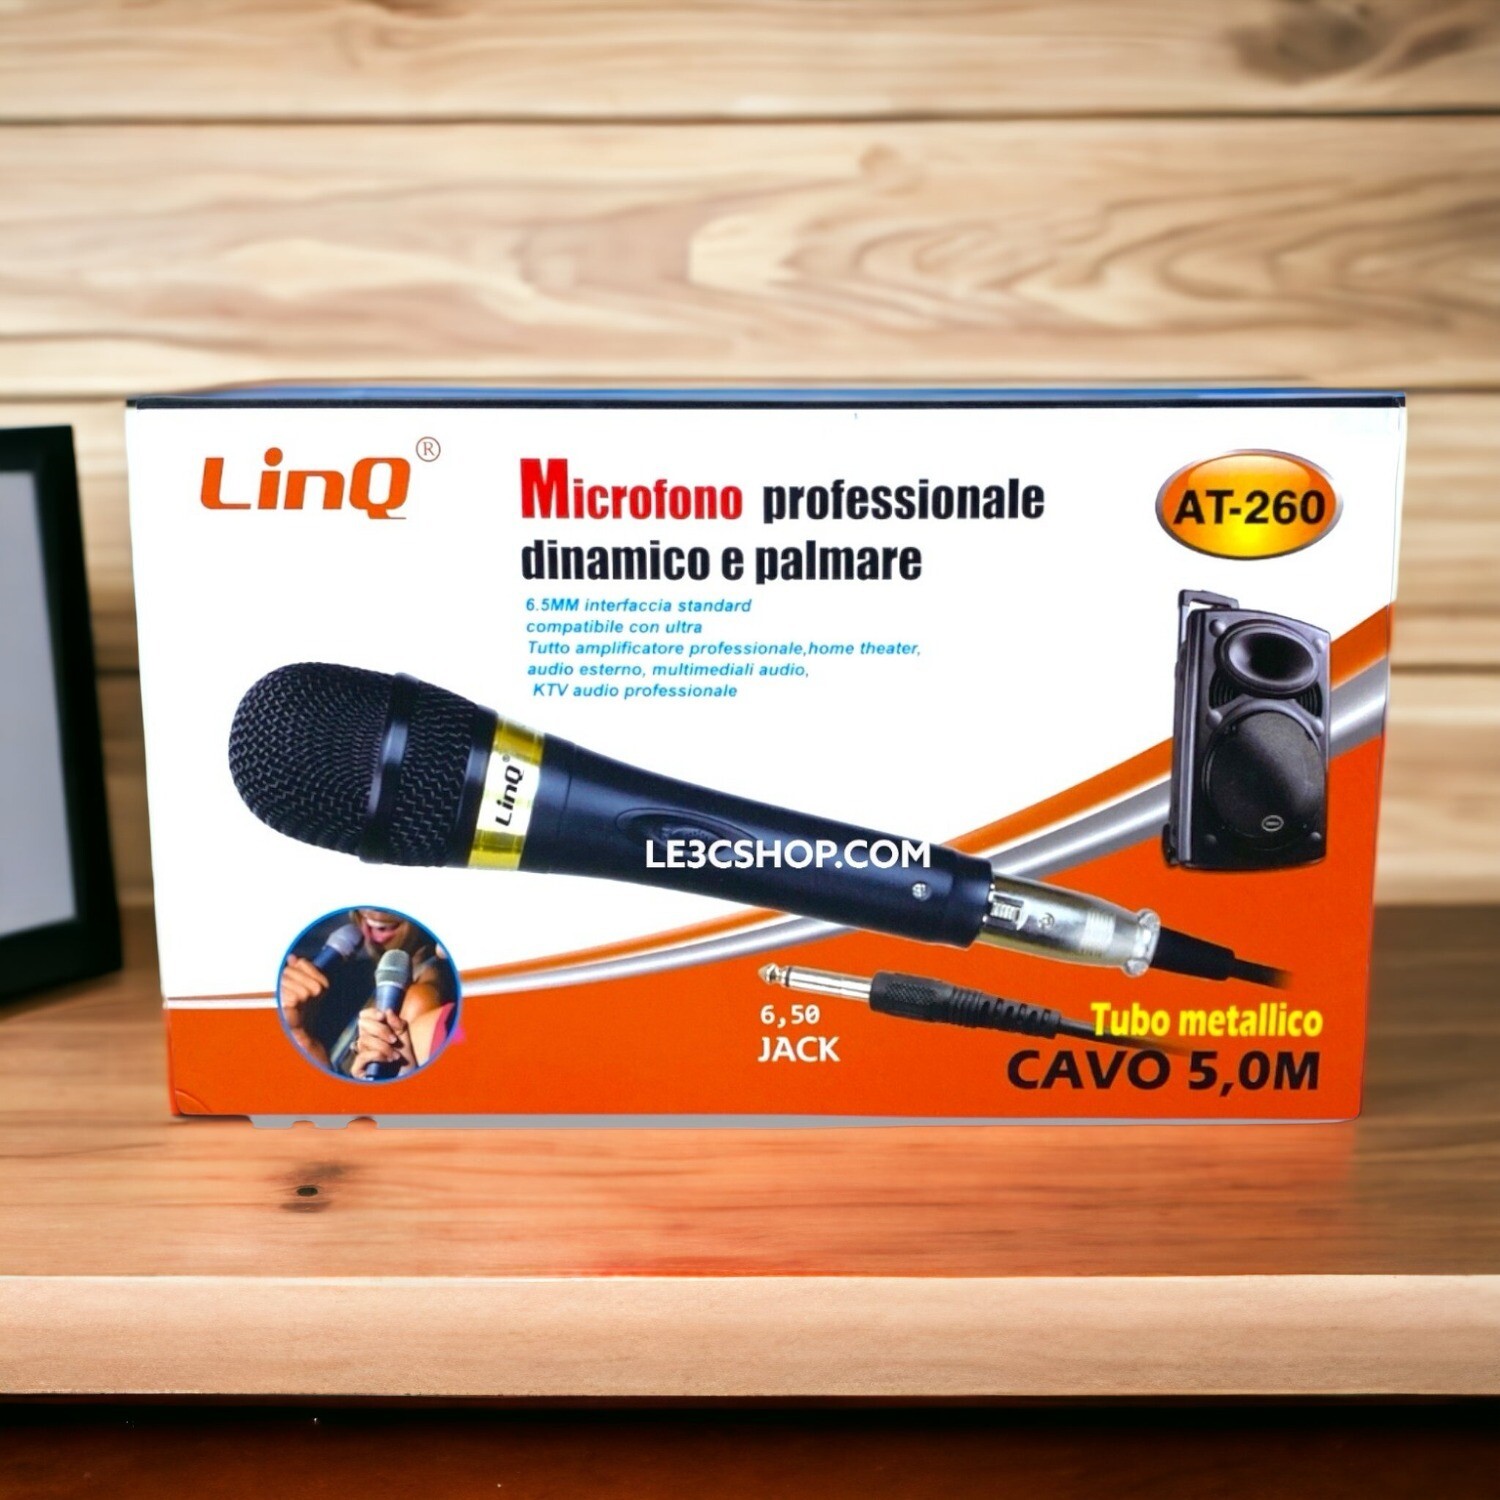 Microfono Dinamico LINQ con Cavo 5m - Prestazioni Audio Professionali